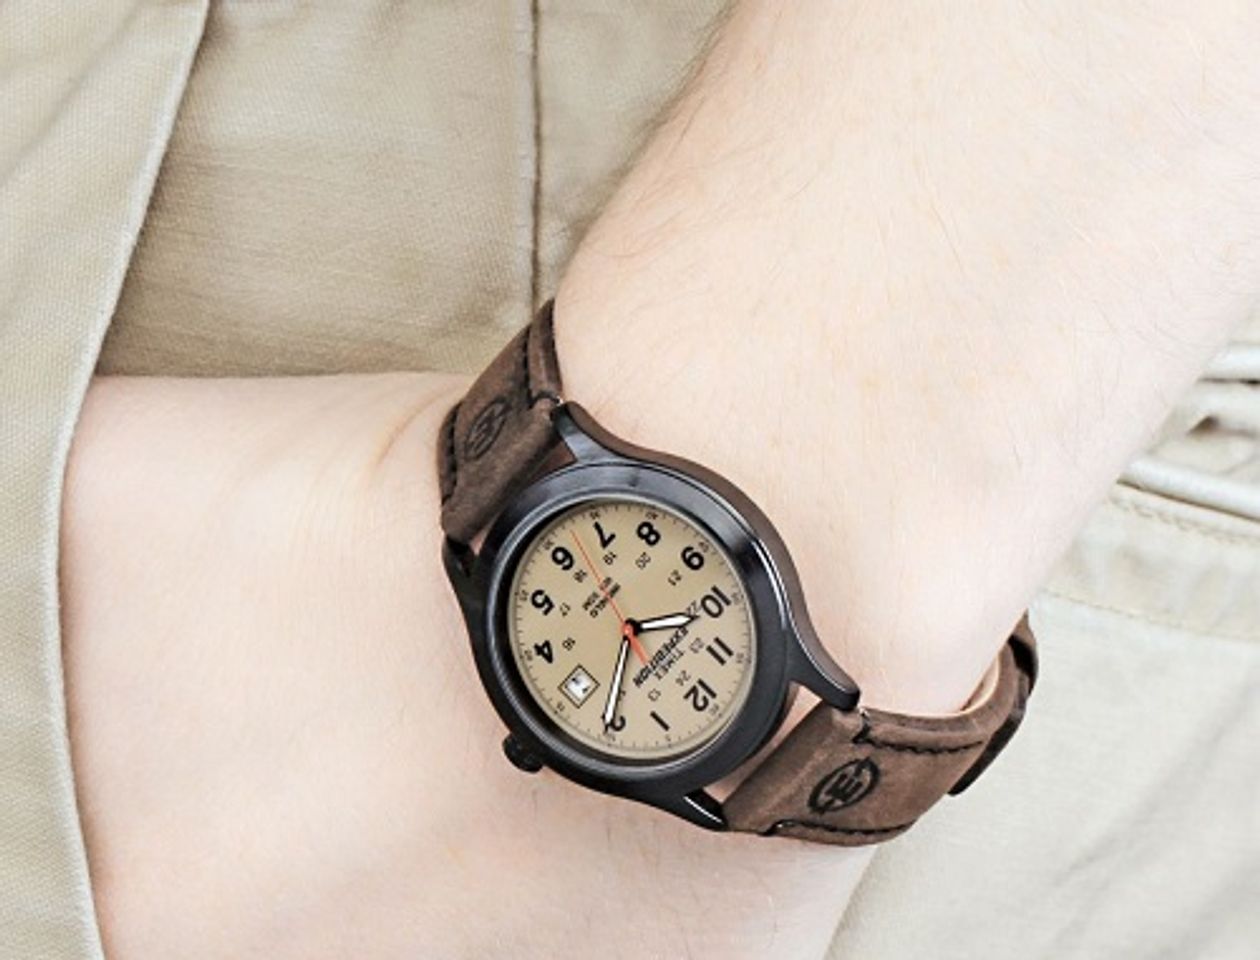 Đồng hồ Timex T49955 khi đeo lên tay đem lại cảm giác trẻ trung, khỏe khoắn, cực thu hút